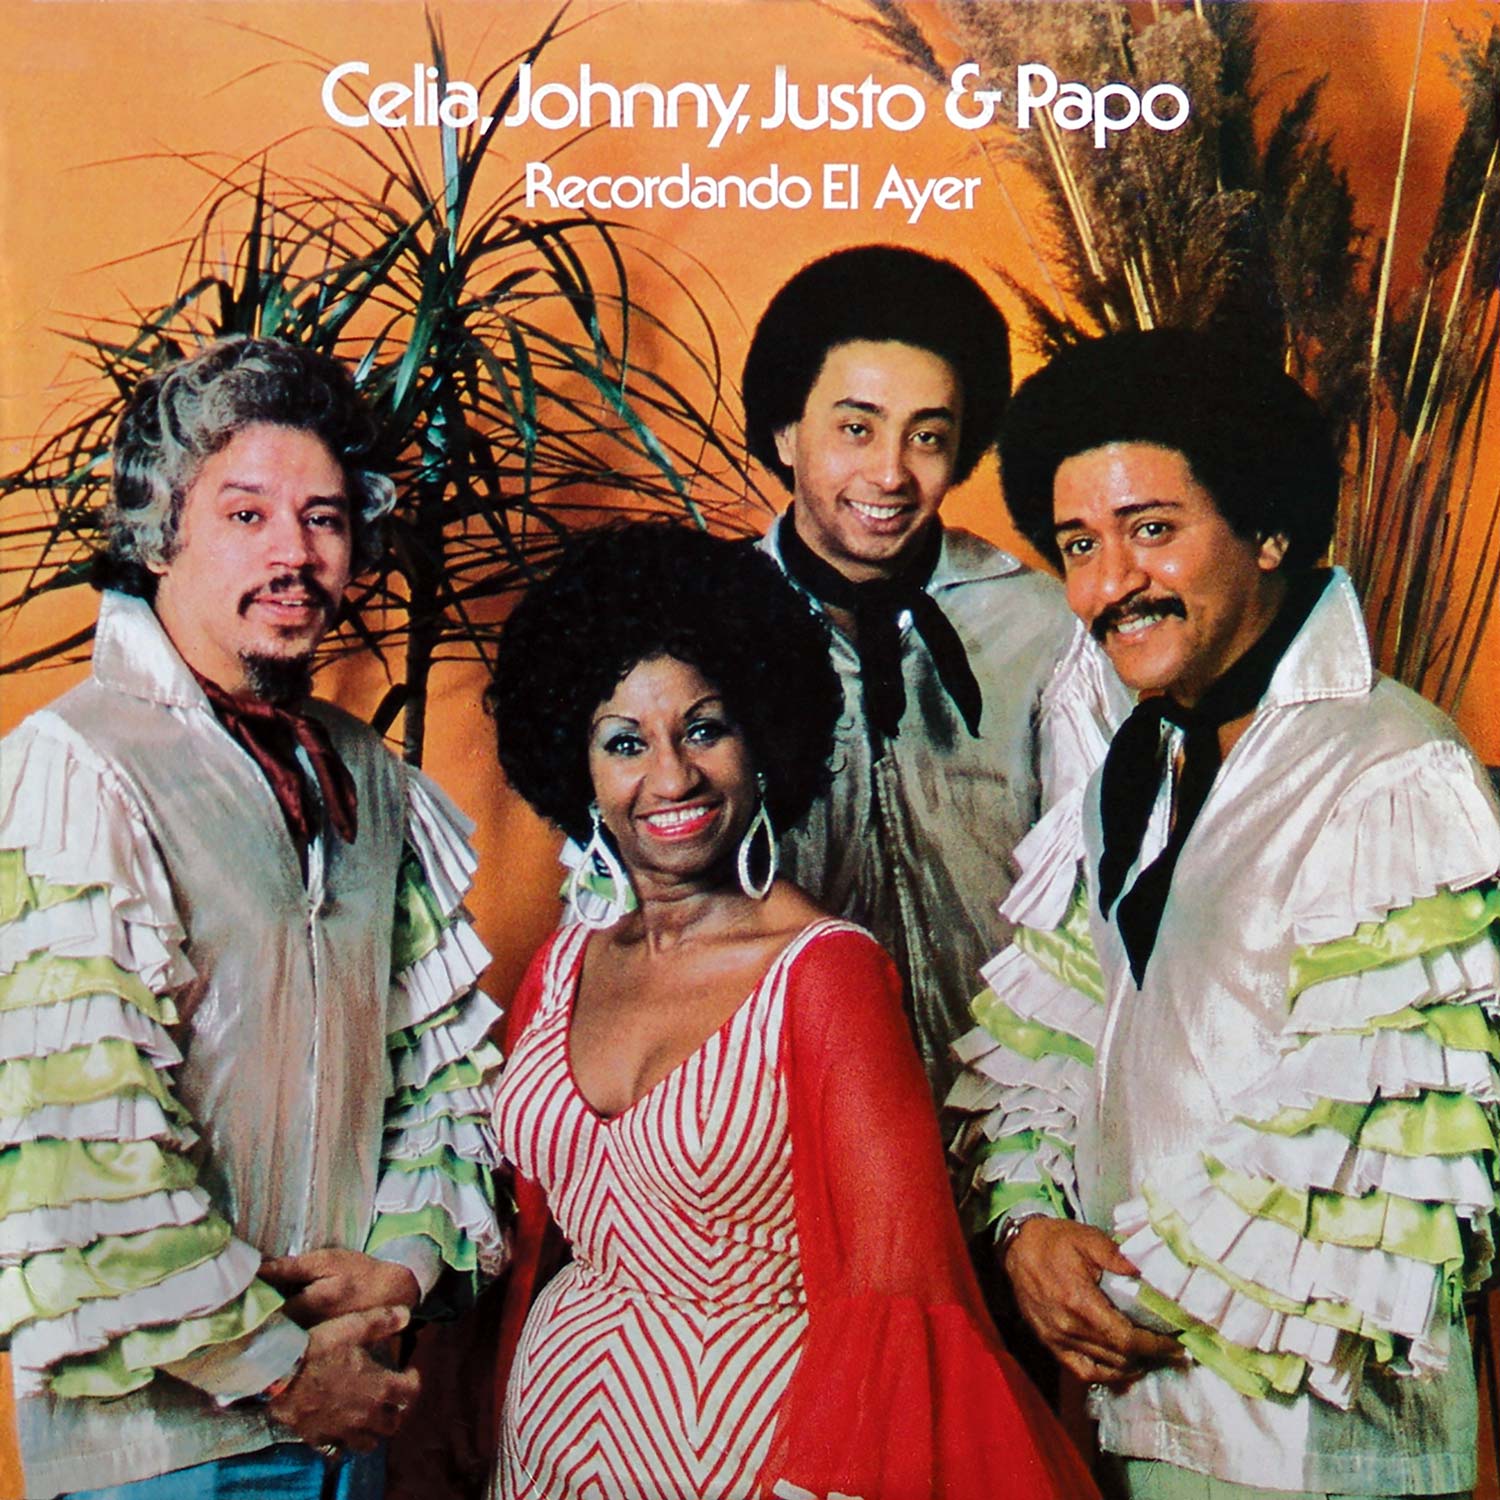 Featured image for “Celia, Johnny Justo & Papo – Recordando El Ayer”